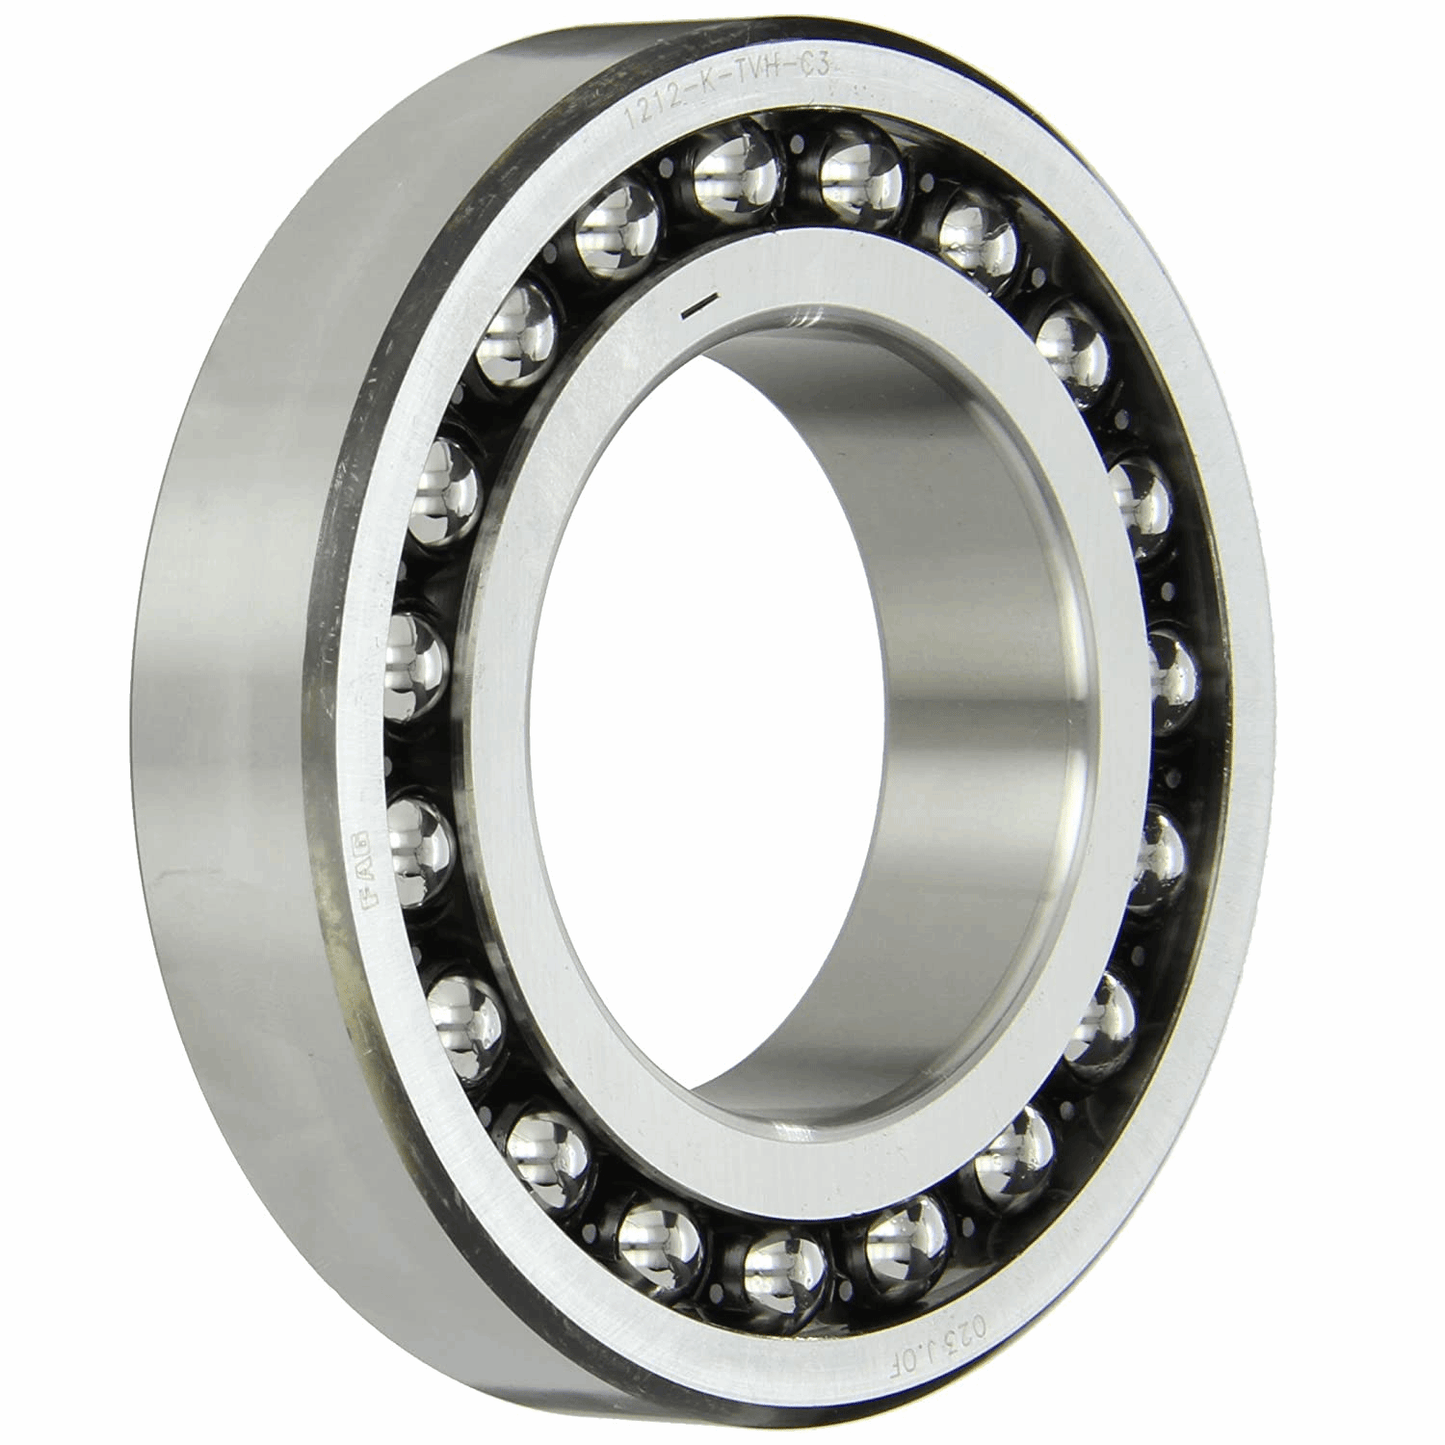 55x100x25 2211 spherical ball bearing radial bearing